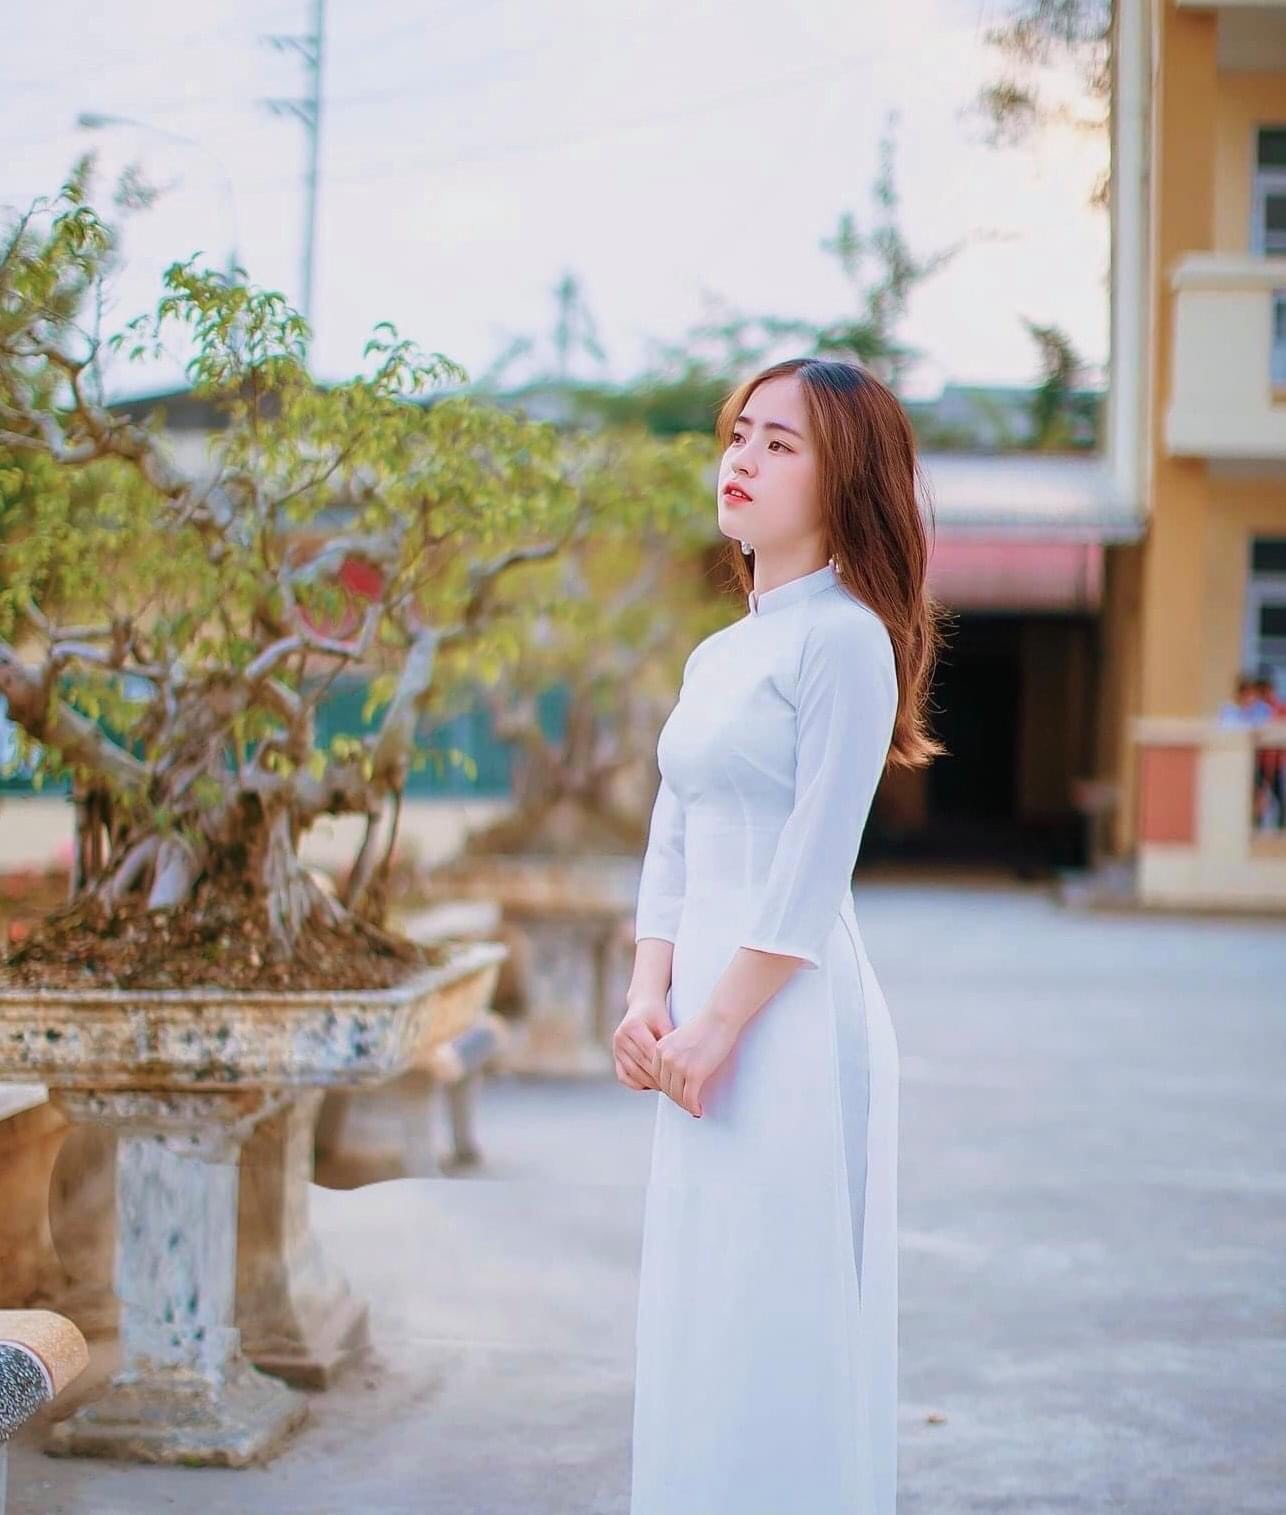 Cô bé bán lê nổi tiếng 3 năm trước ở Hà Giang: Đã là thiếu nữ xinh đẹp, giỏi giang - Ảnh 4.